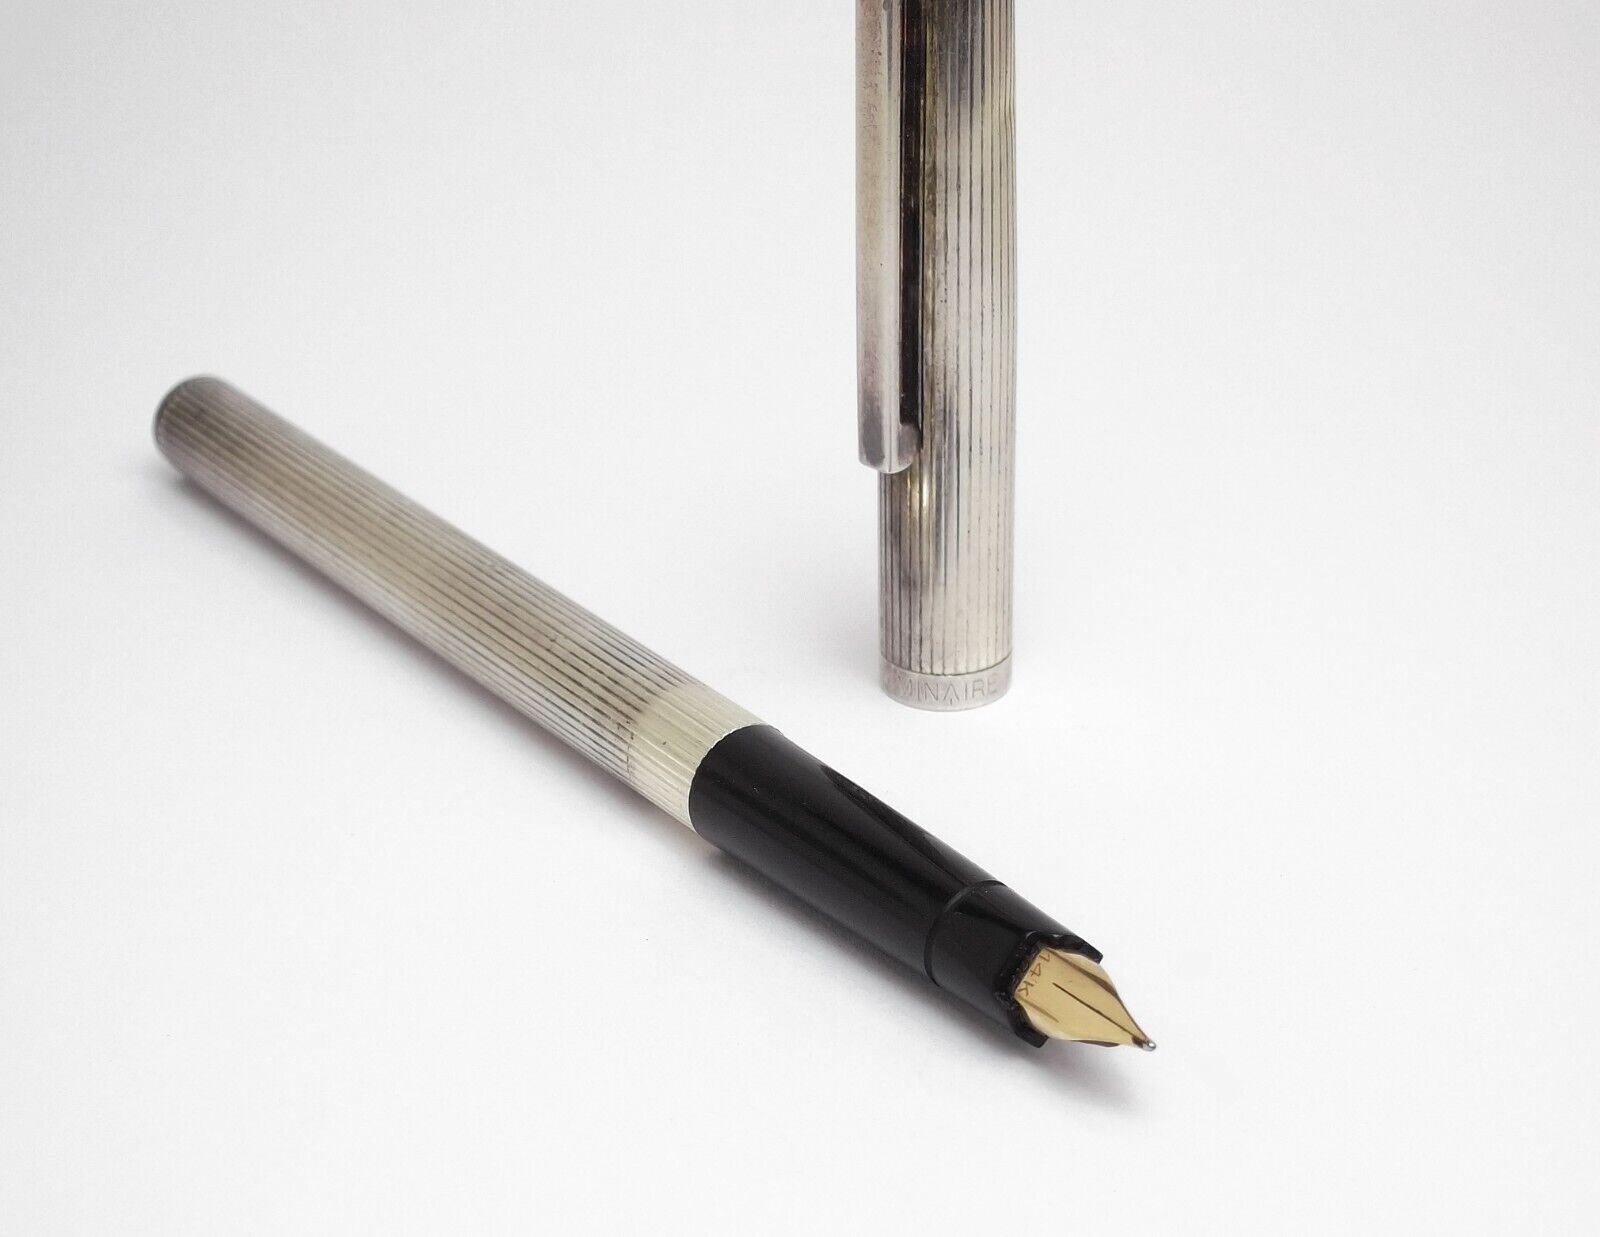 Flaminaire Pen Vintage Silver Fountain Pen - 14K Nib